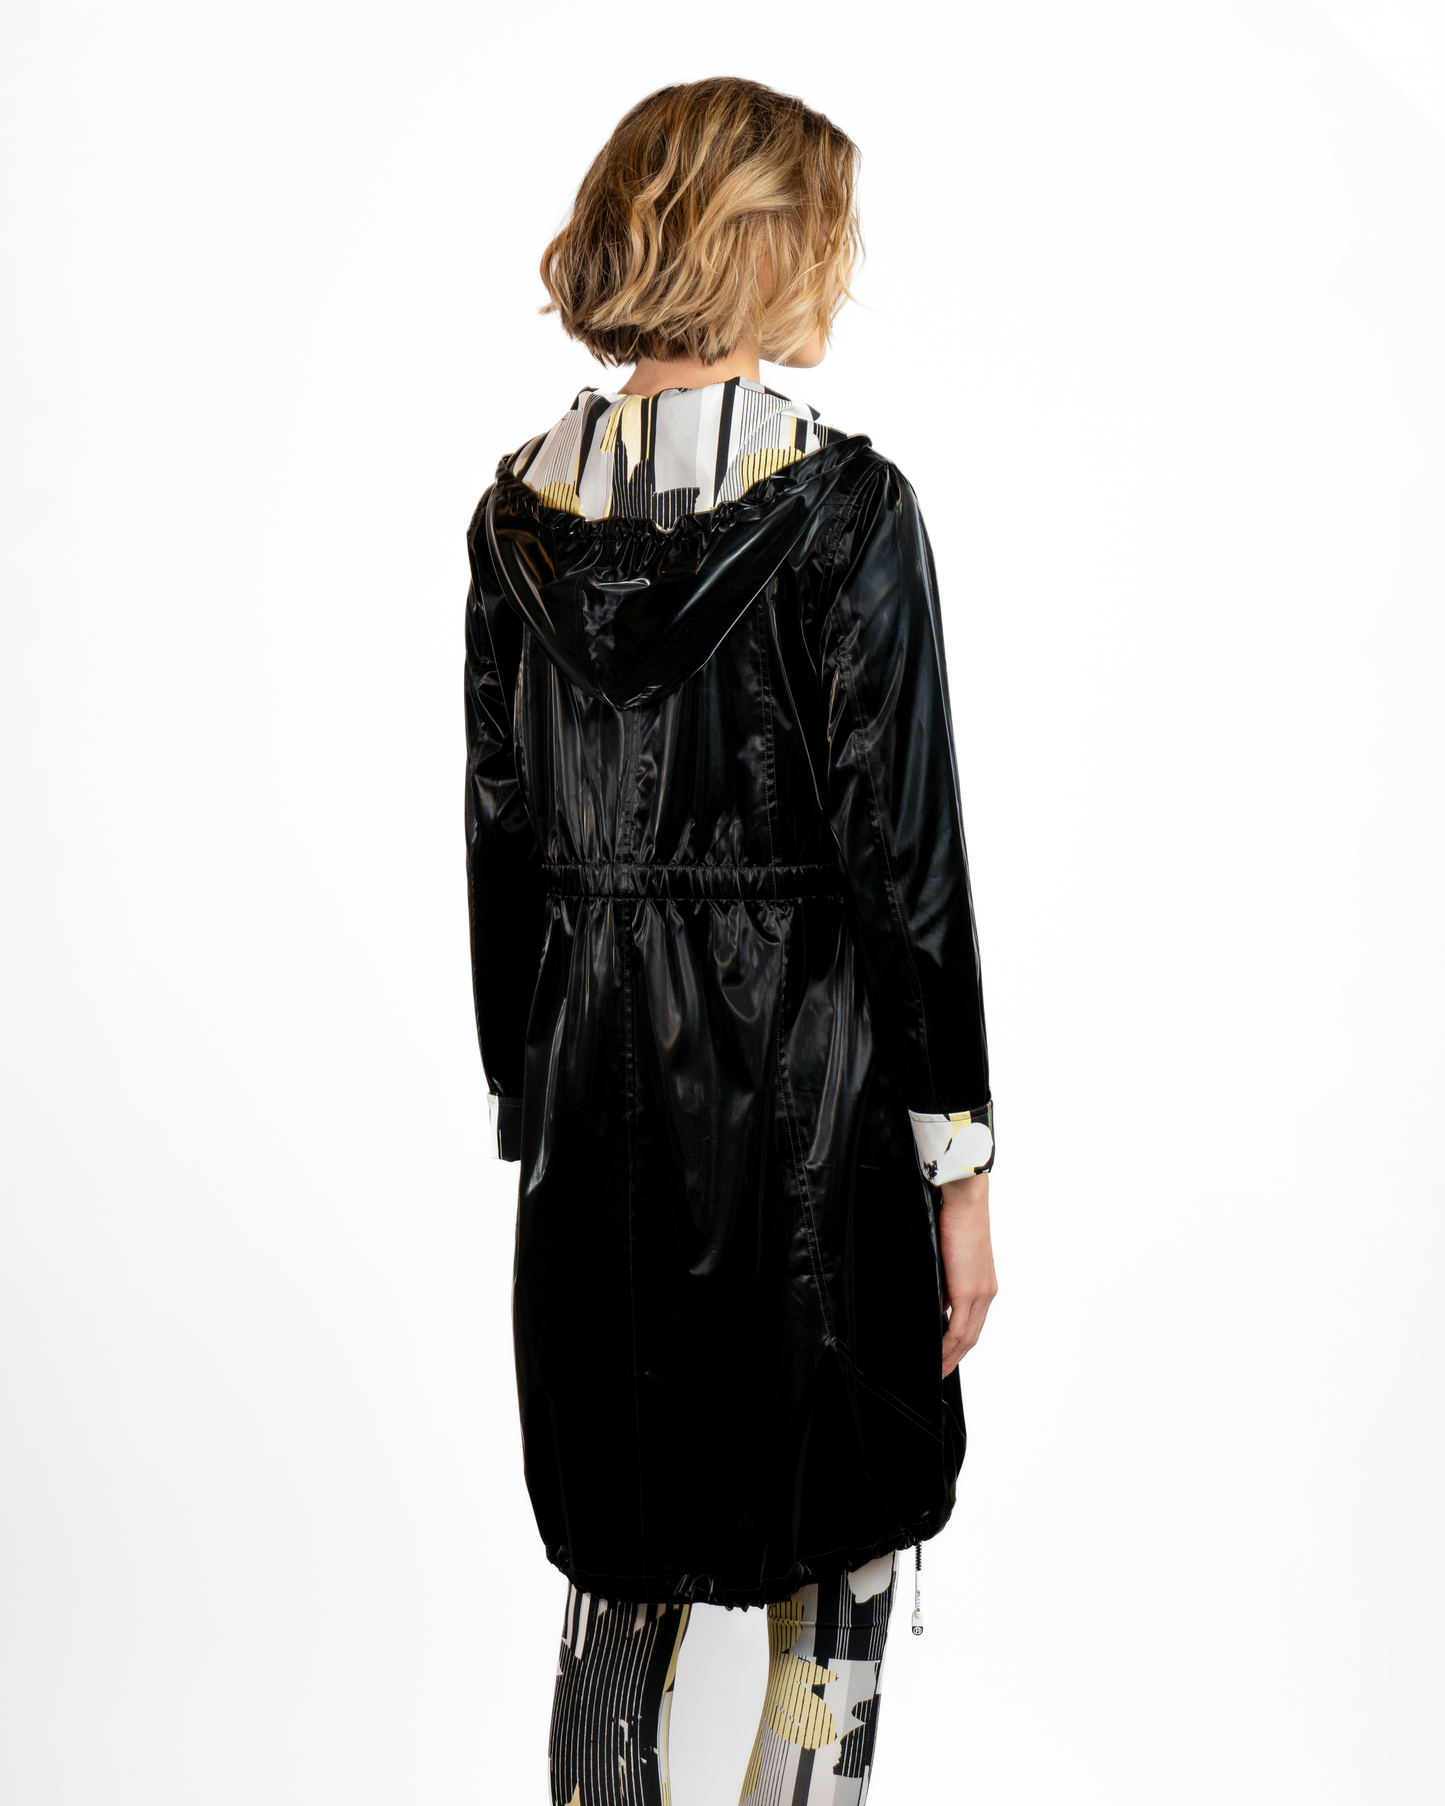 BYLYSE Shiny Long Raincoat